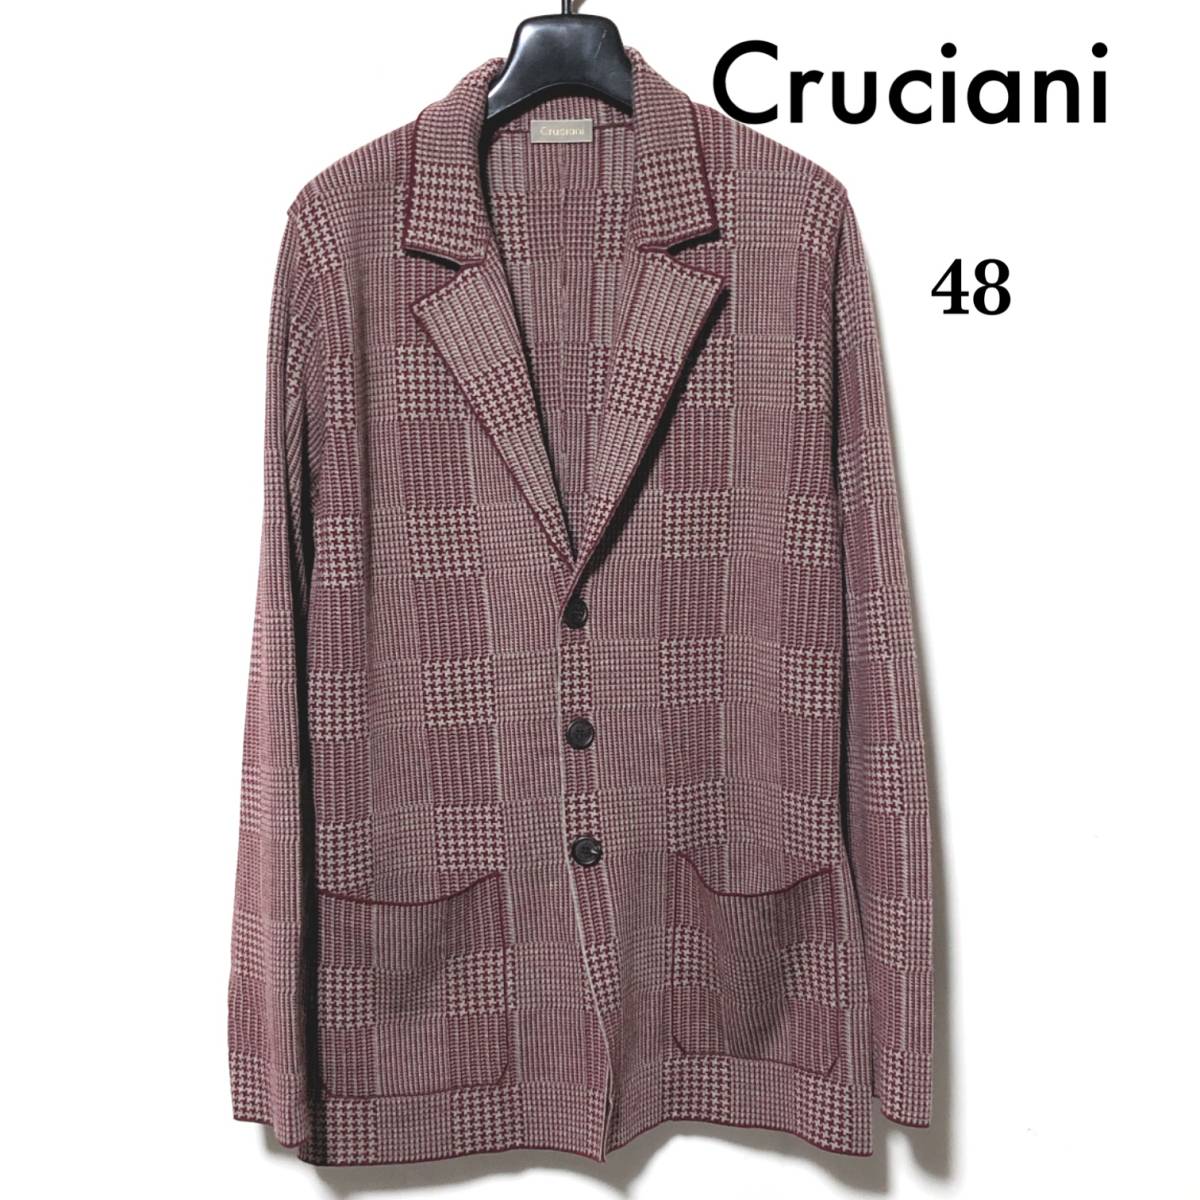 Cruciani ニットジャケット 48/クルチアーニ グレンチェック CU14.080 ウール 3Bテーラード